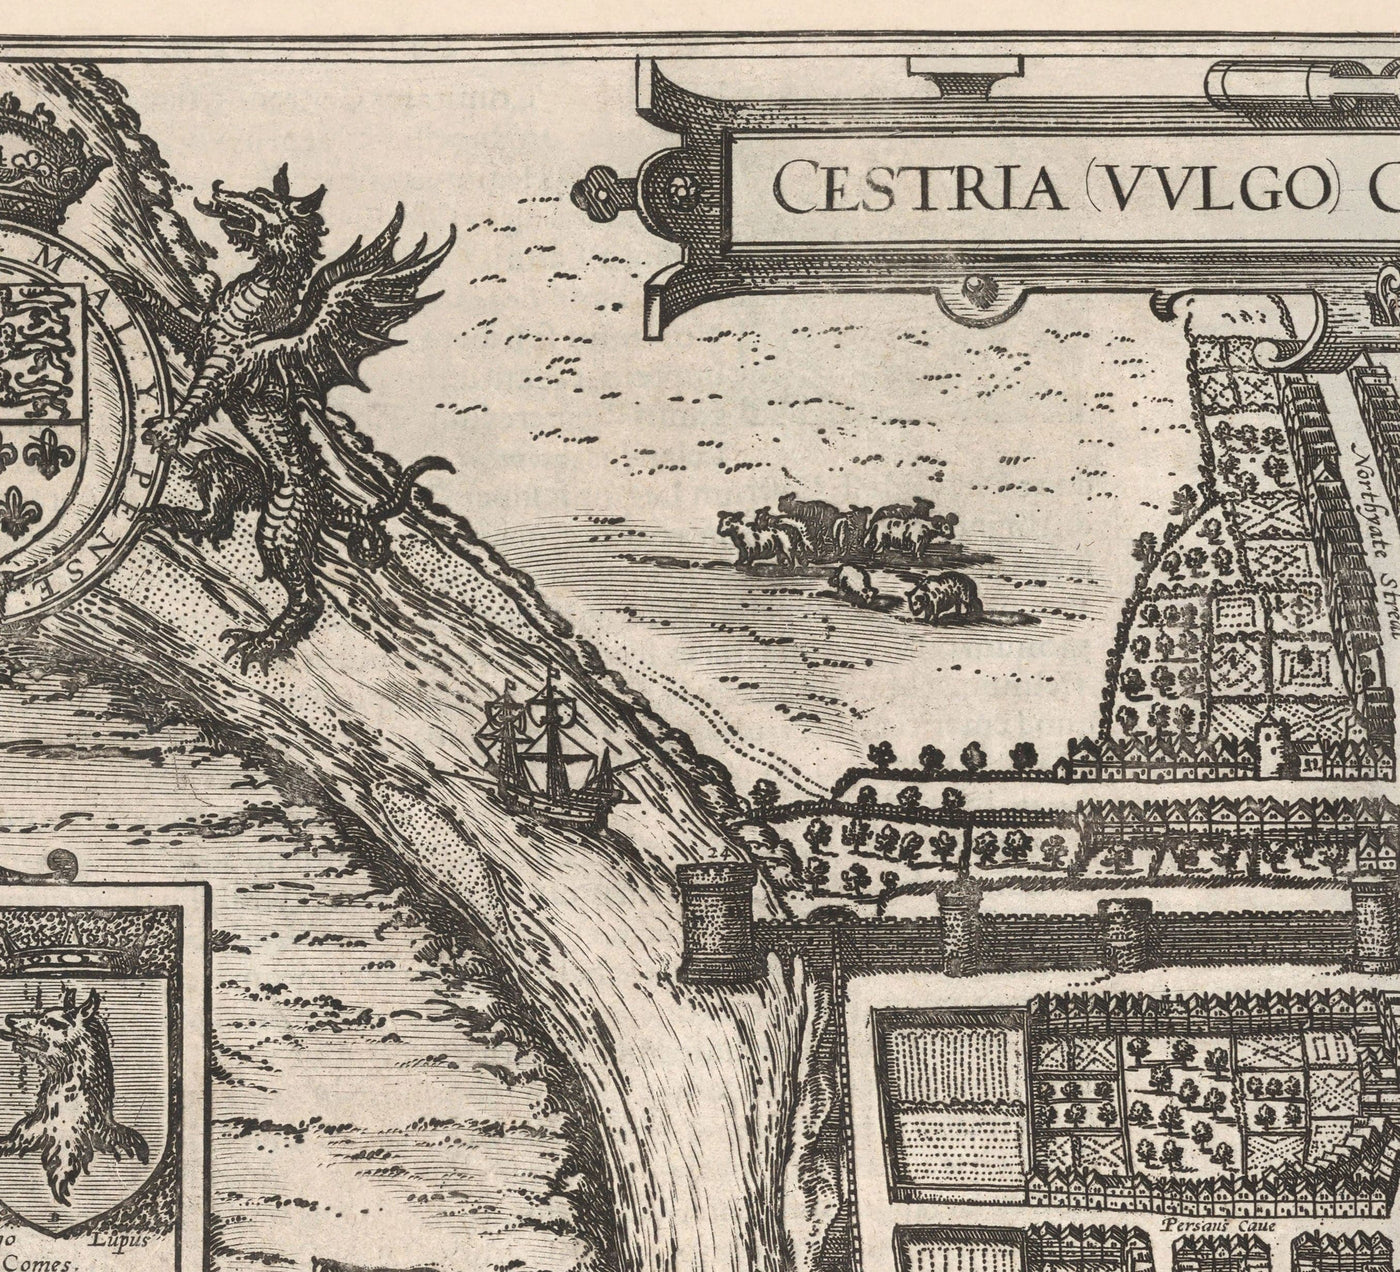 Mapa antiguo de Chester, Cheshire 1581 por Georg Braun - Castillo, Catedral, Murallas de la ciudad romana